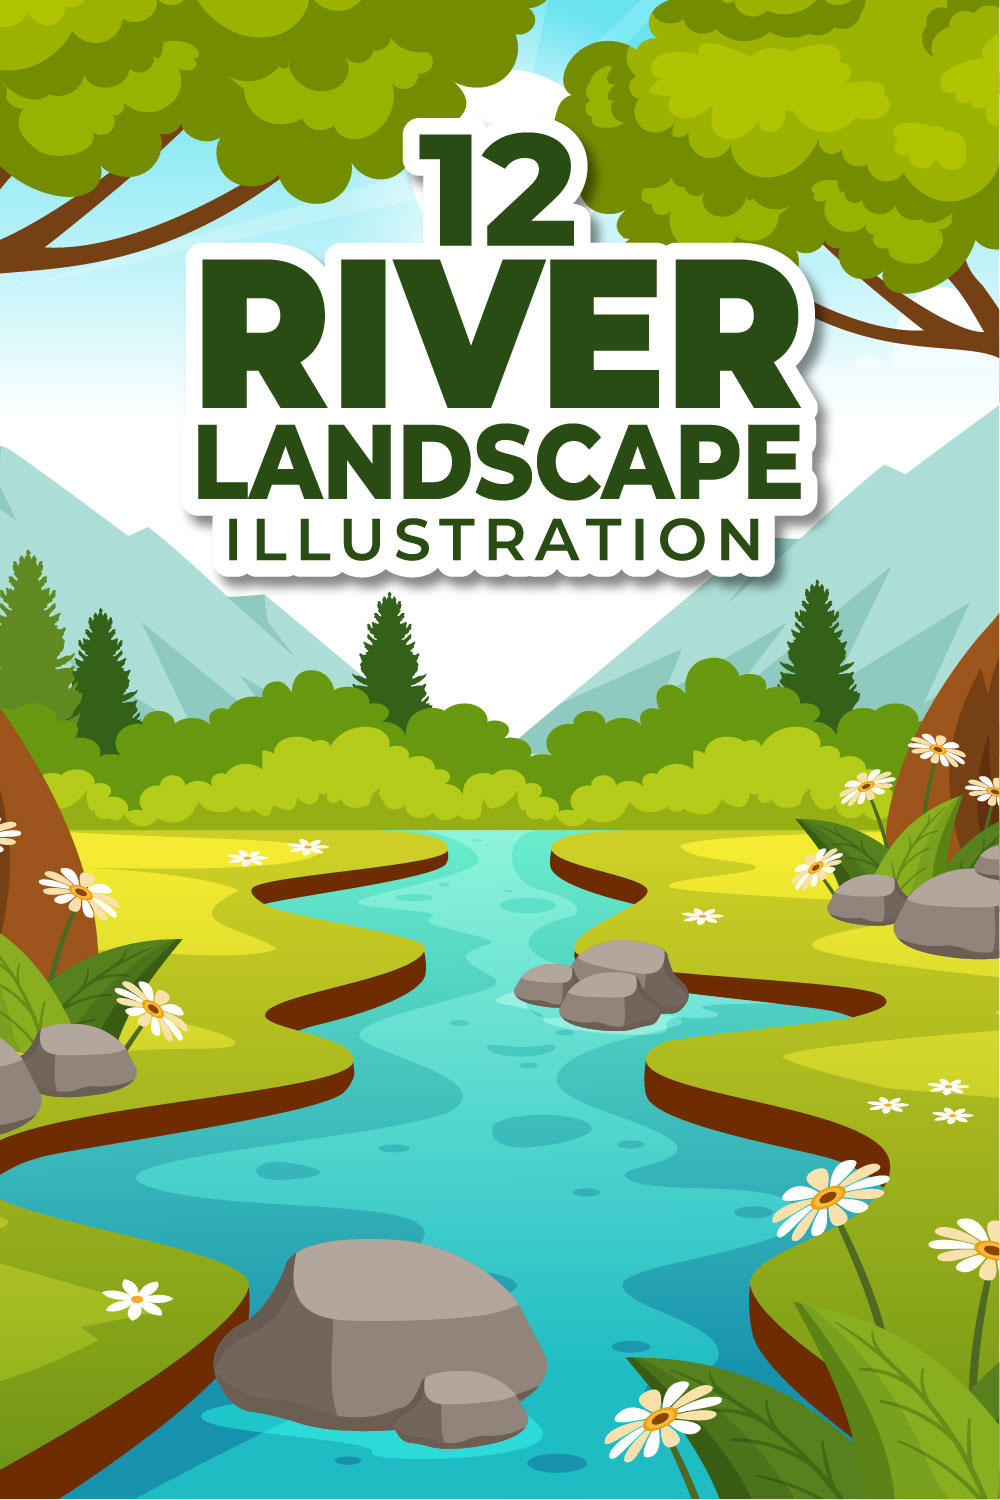 12 River Landscape Illustration pinterest preview image.